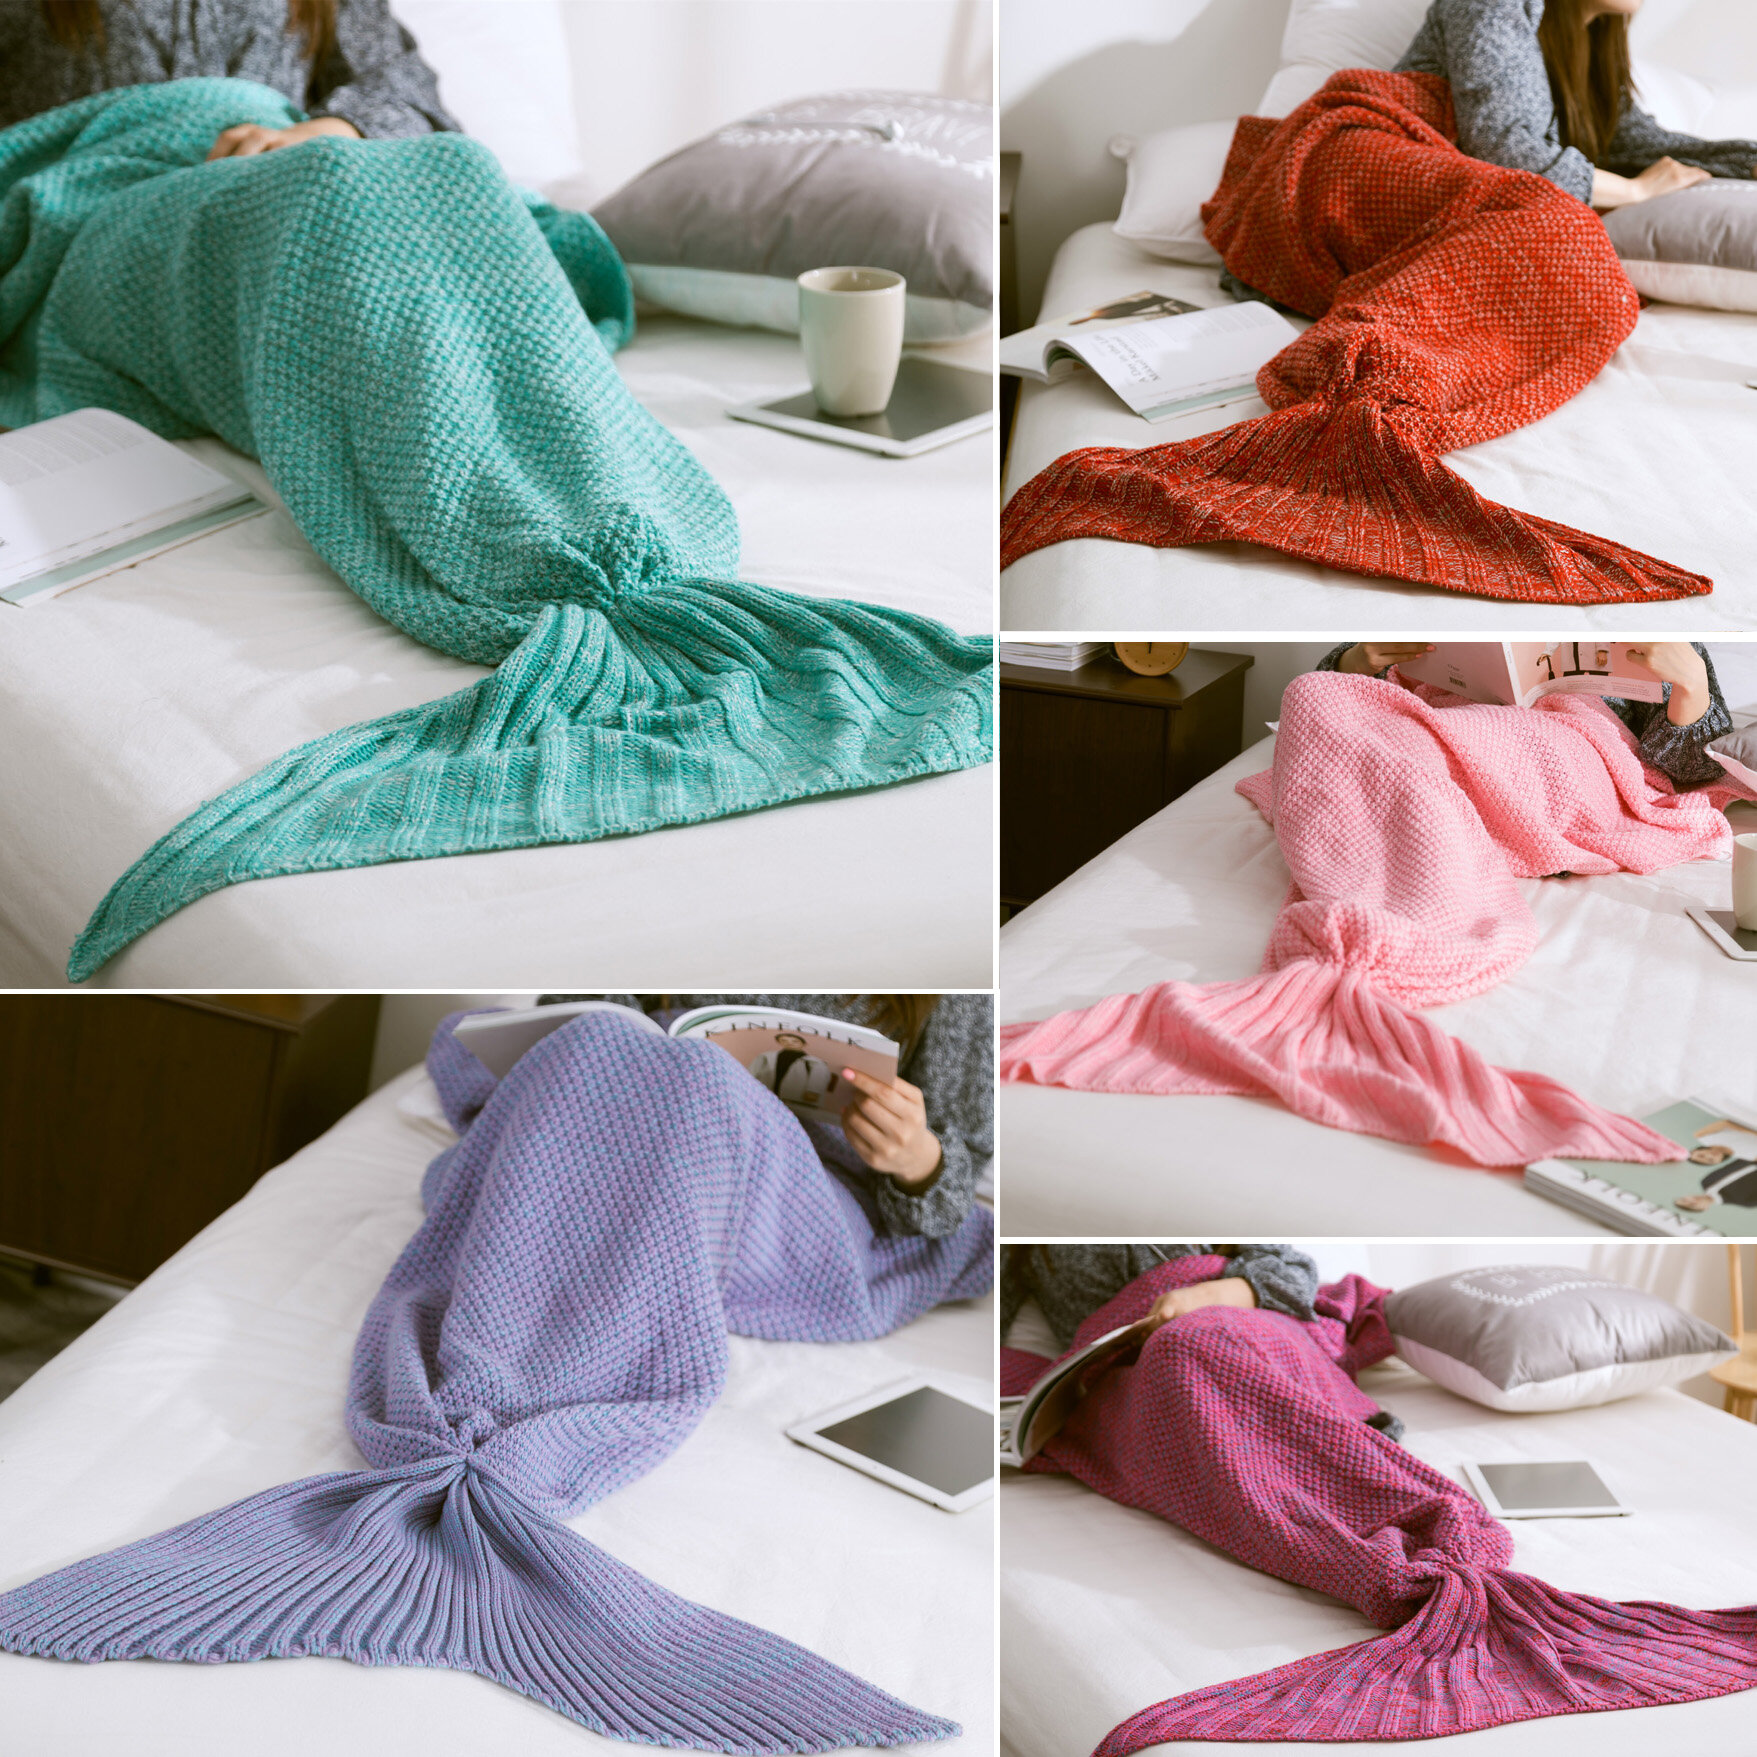 Tessuto a maglia per la lavorazione a maglia delle fibre di coperta della sirena caldo Super Matrimoniale Soft Mat Home Office Bed Sleep